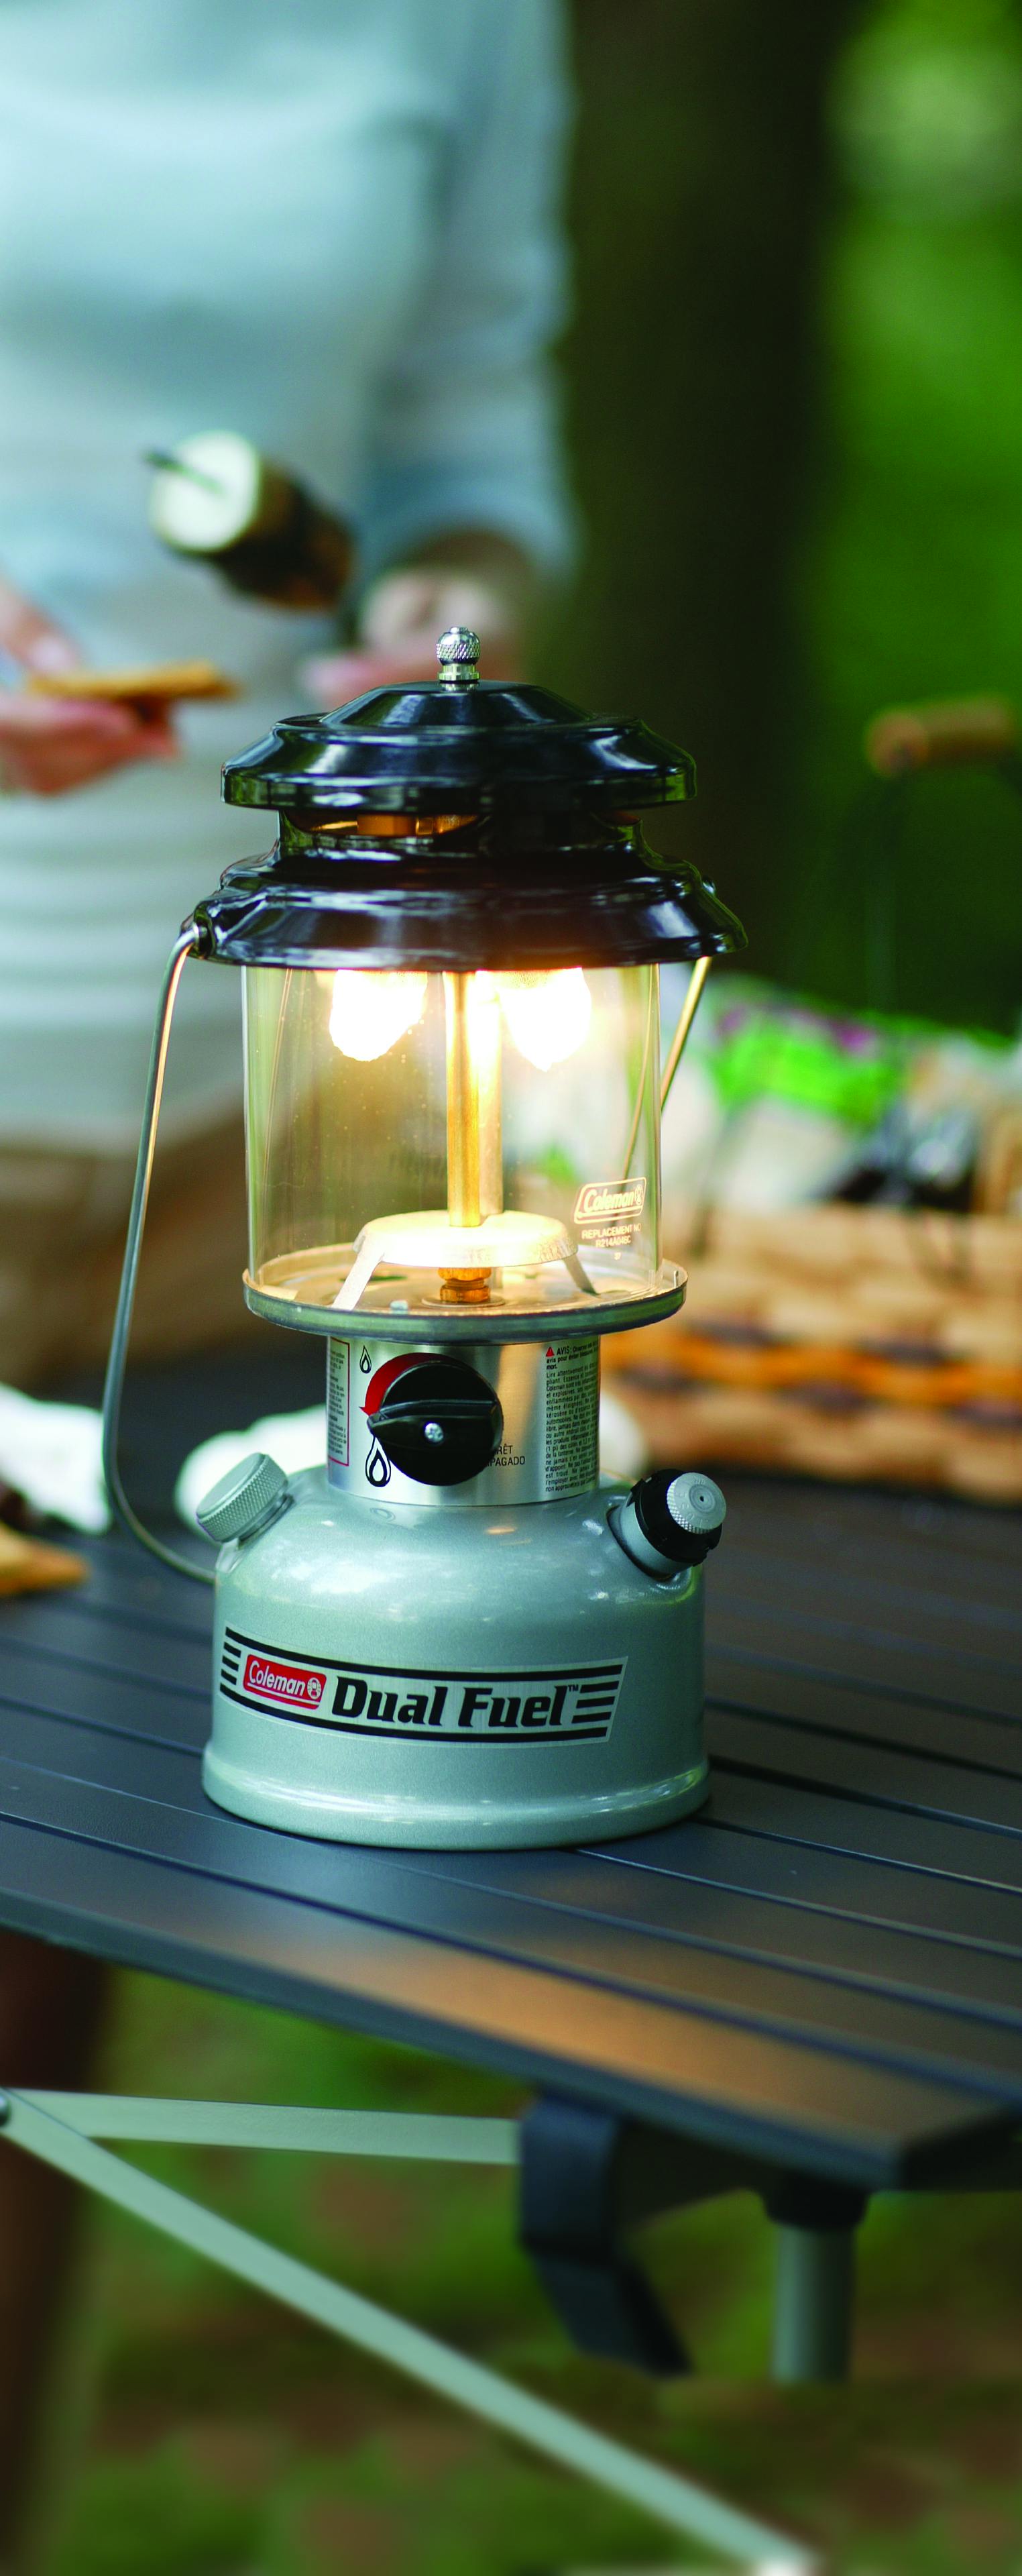 Premium Dual Fuel™ Lantern with Case | Coleman